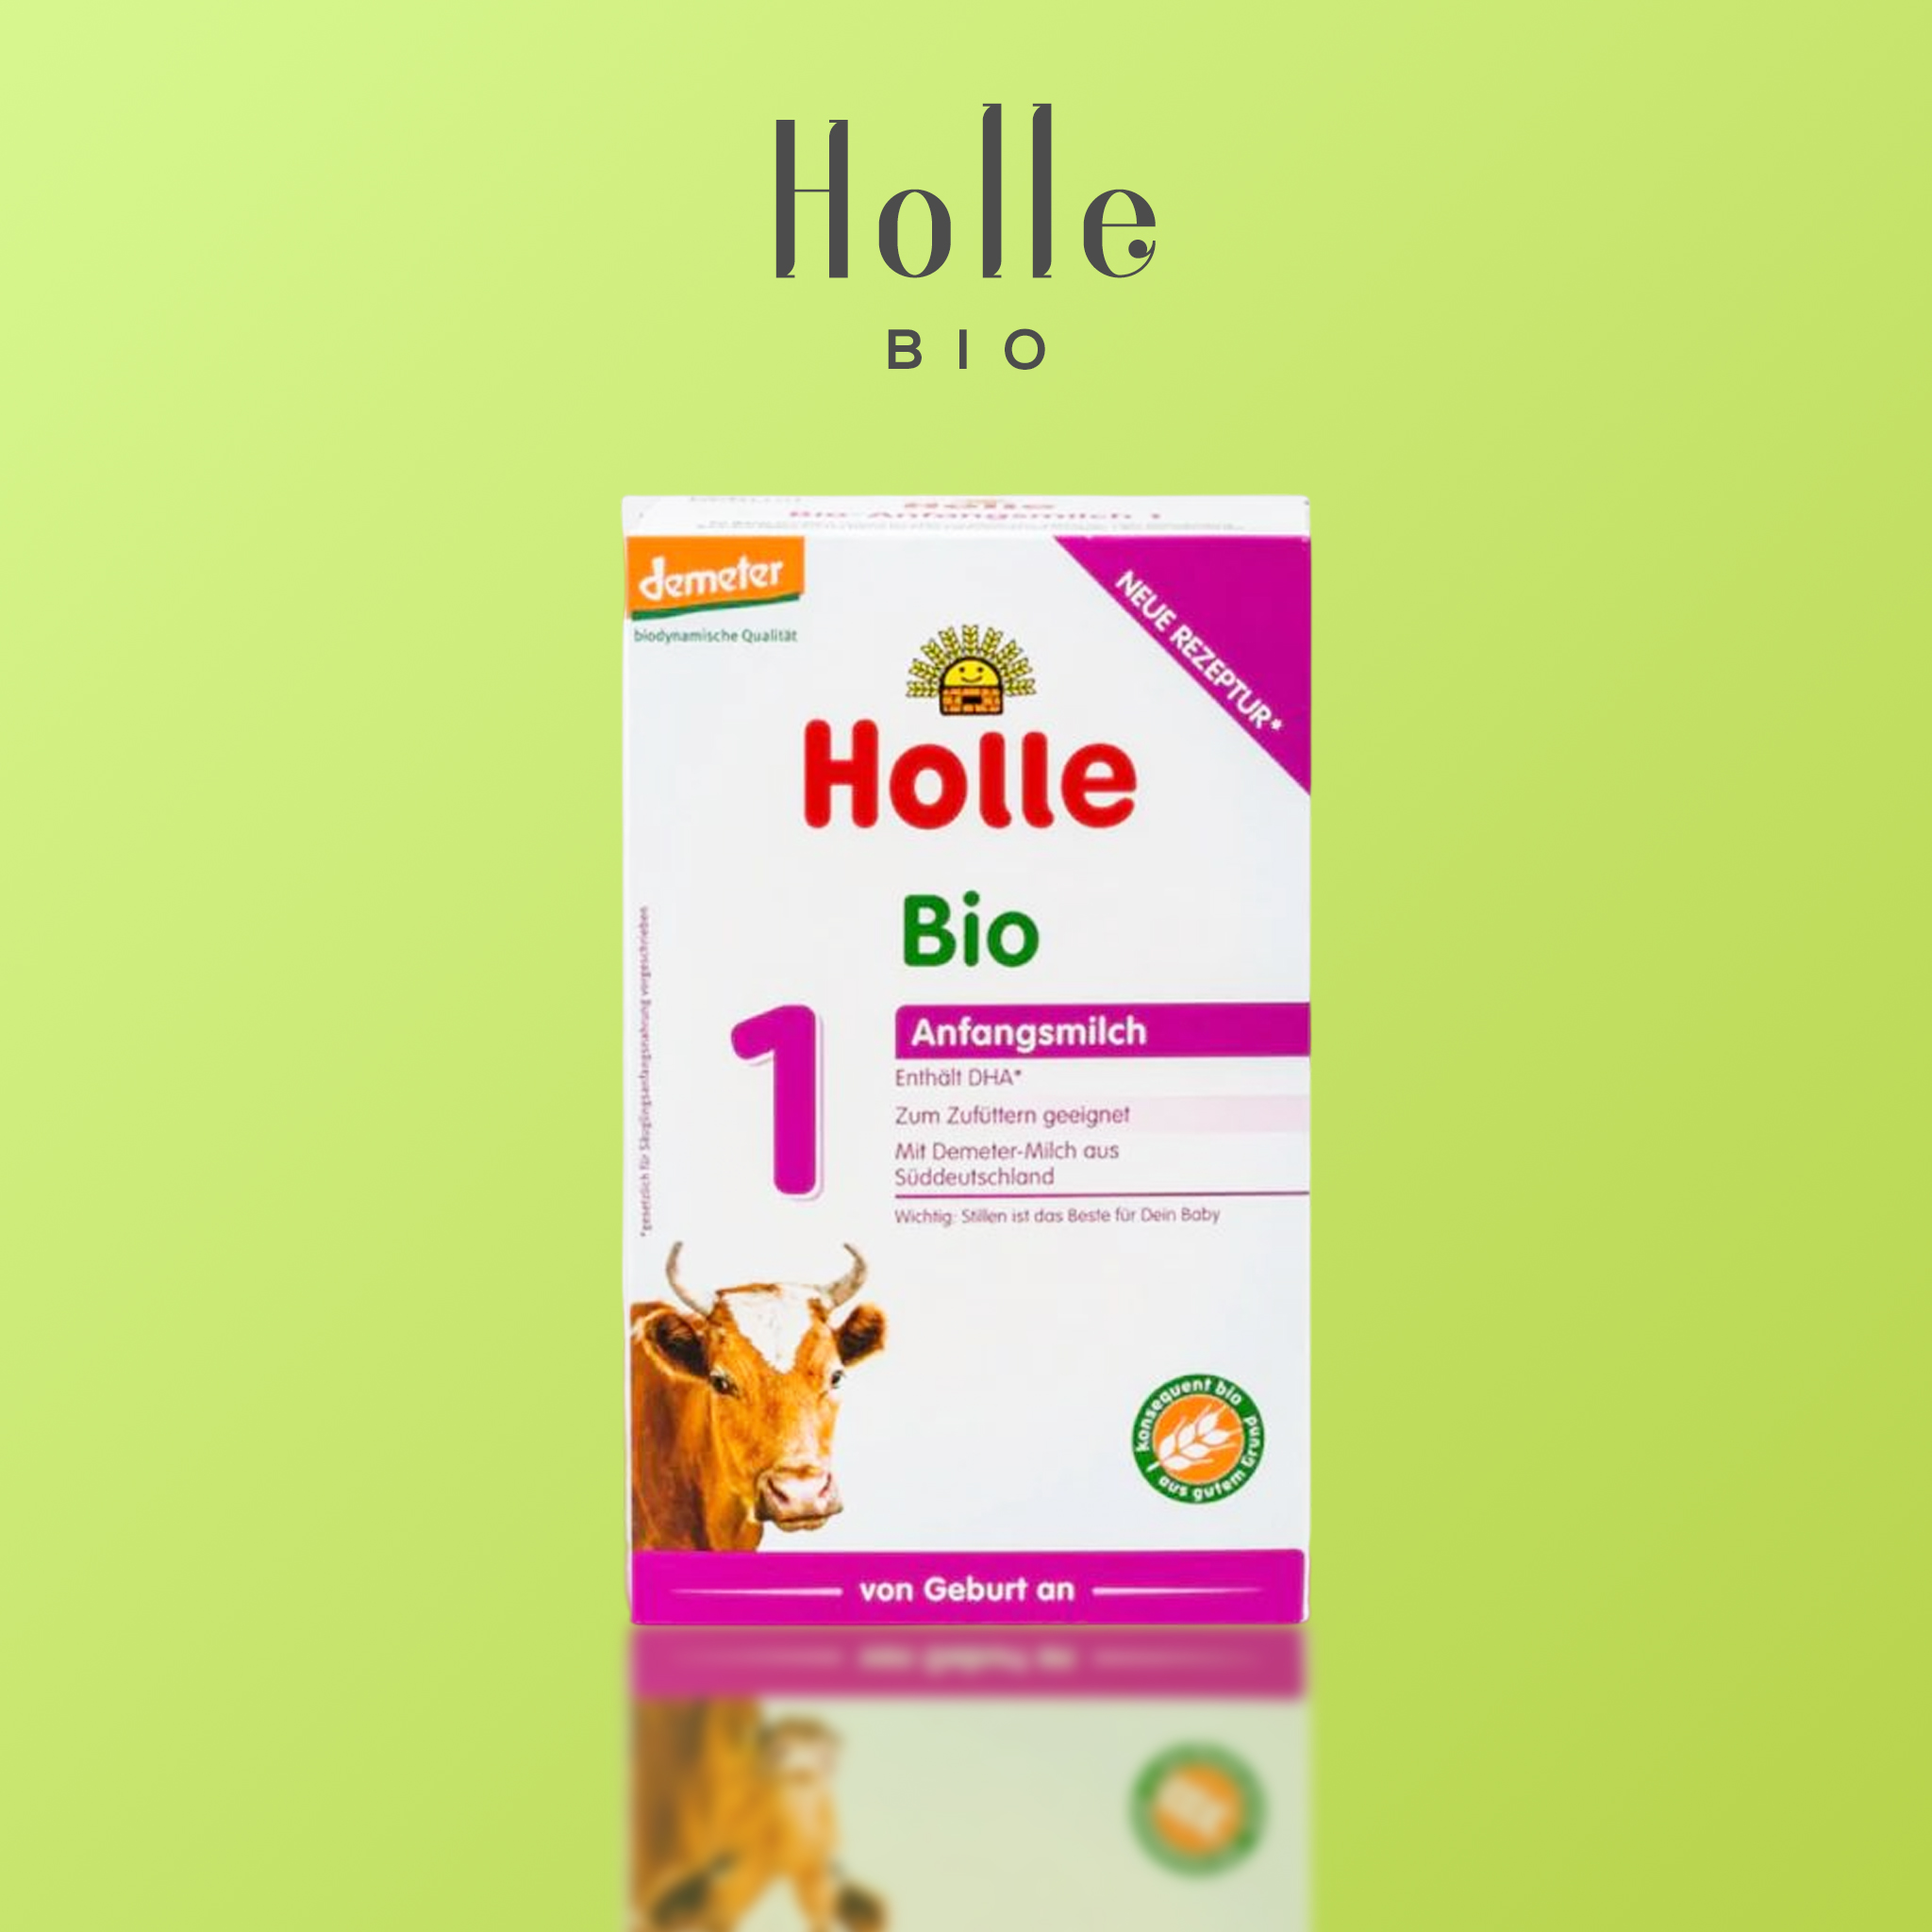 HOLLE BIO STAGE 1 INFANT FORMULA 0+ MONTHS